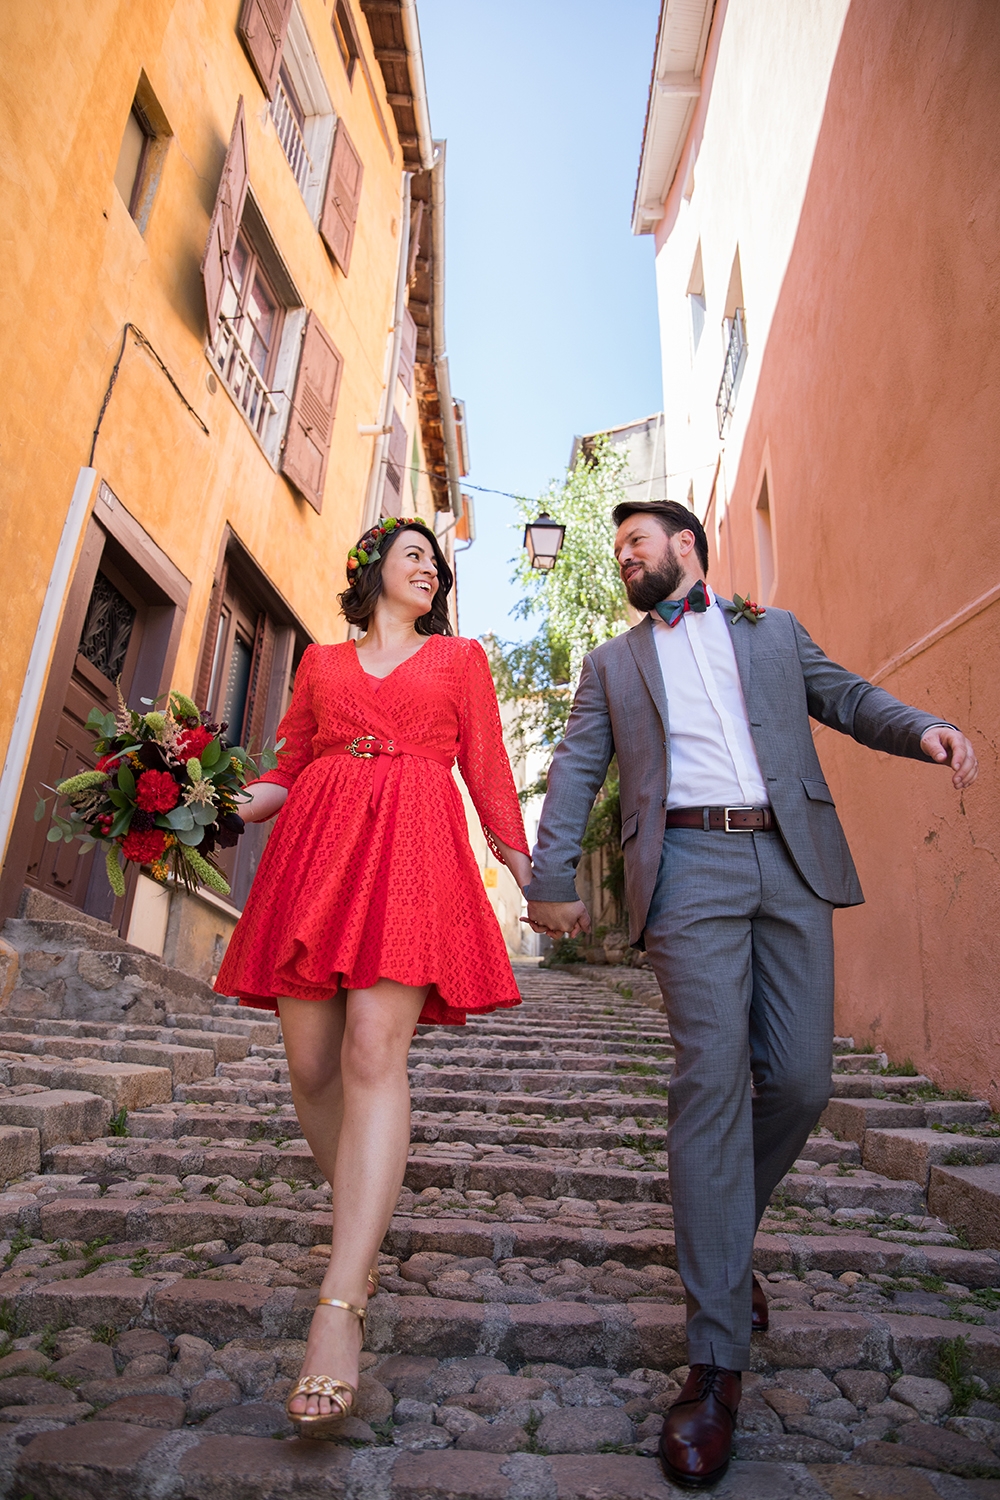 une mariee en robe rouge et son epoux en costume gris descendent les marches des escaliers paves des petites rues de la ville.